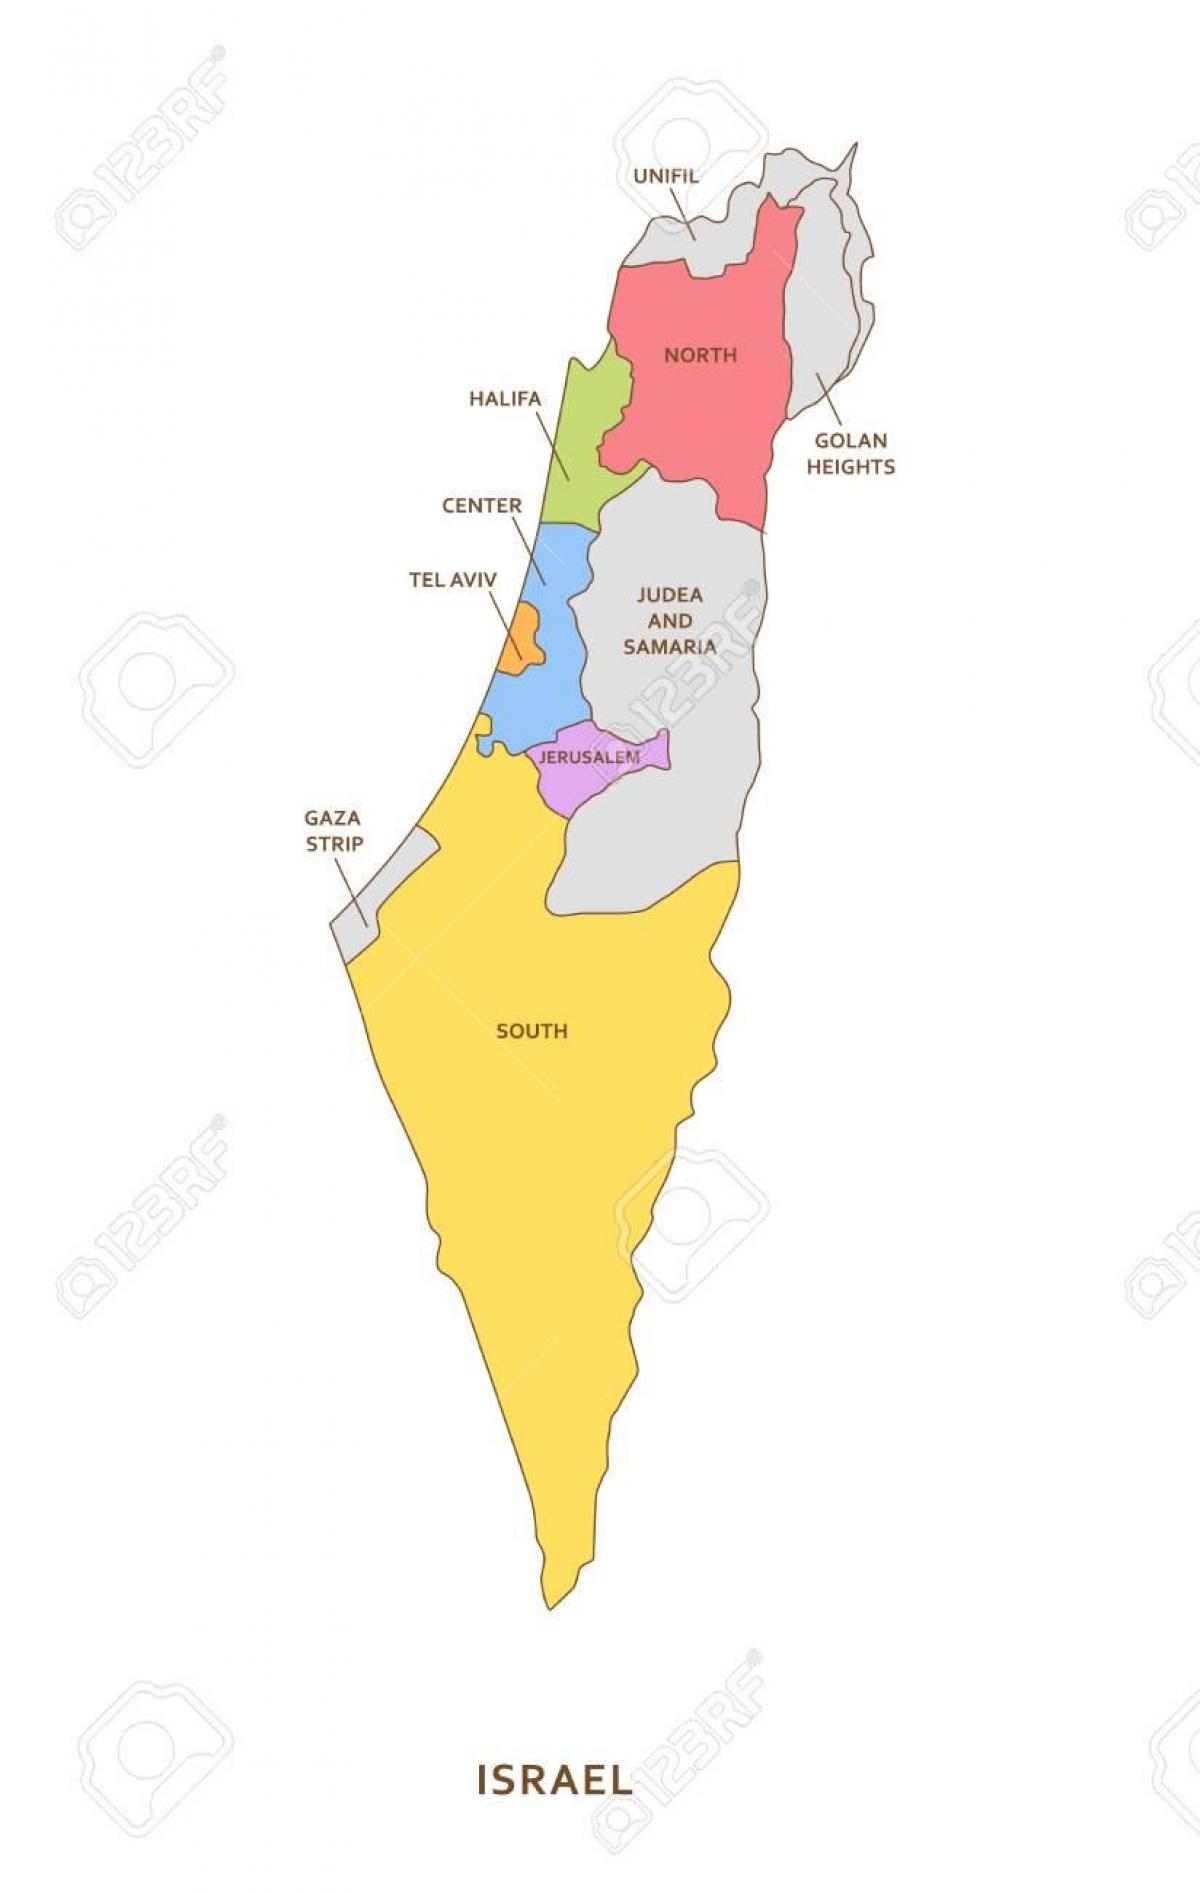 خريطة مناطق إسرائيل